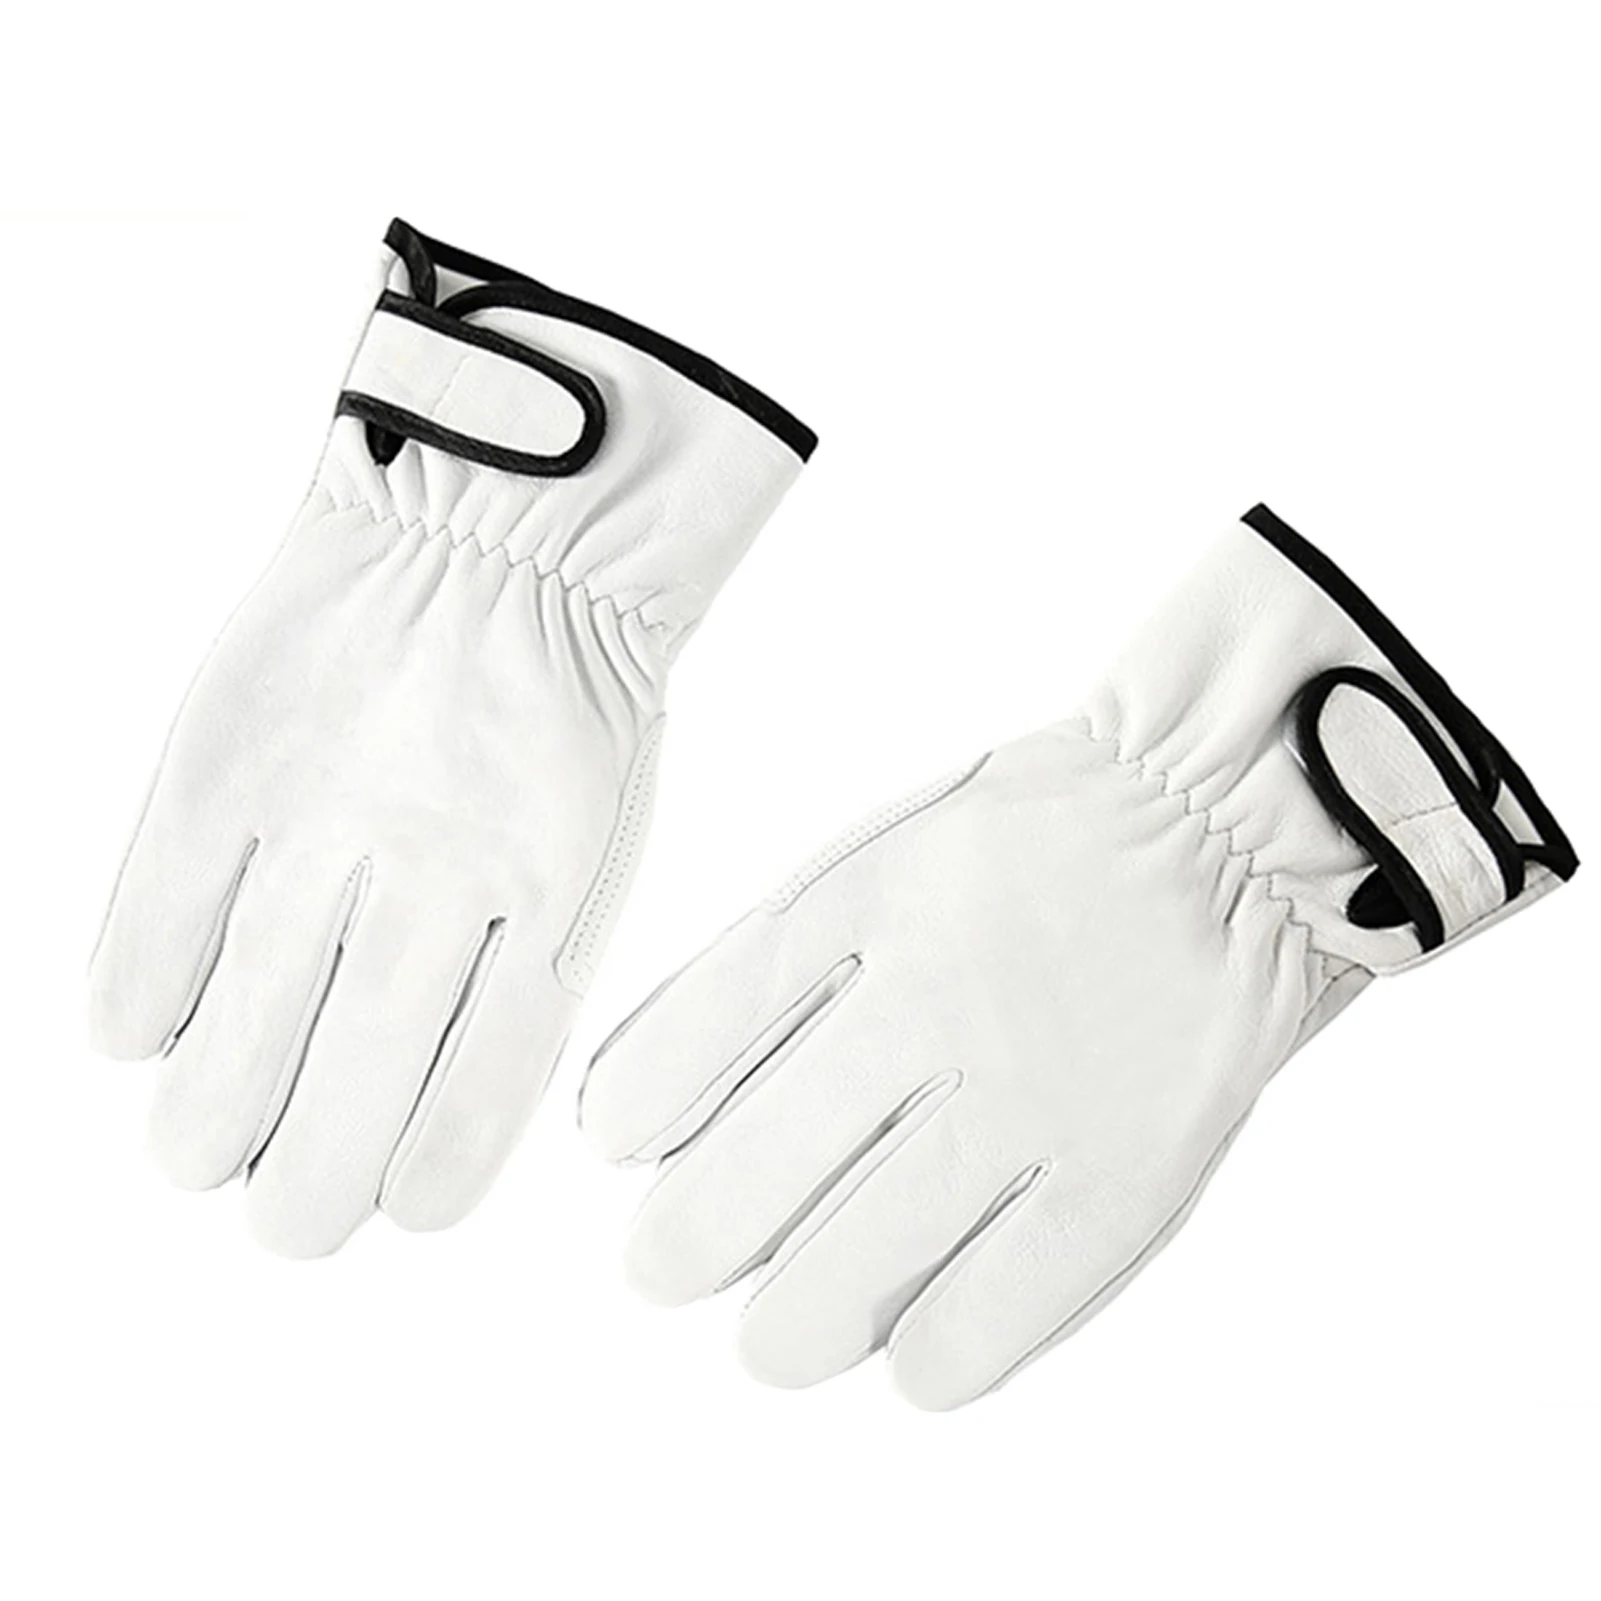 1 пара Многоразовых удобных рабочих перчаток, Эргономичные защитные перчатки для улицы, мужские, женские, утолщенные, износостойкие, долговечные, для сельского хозяйства